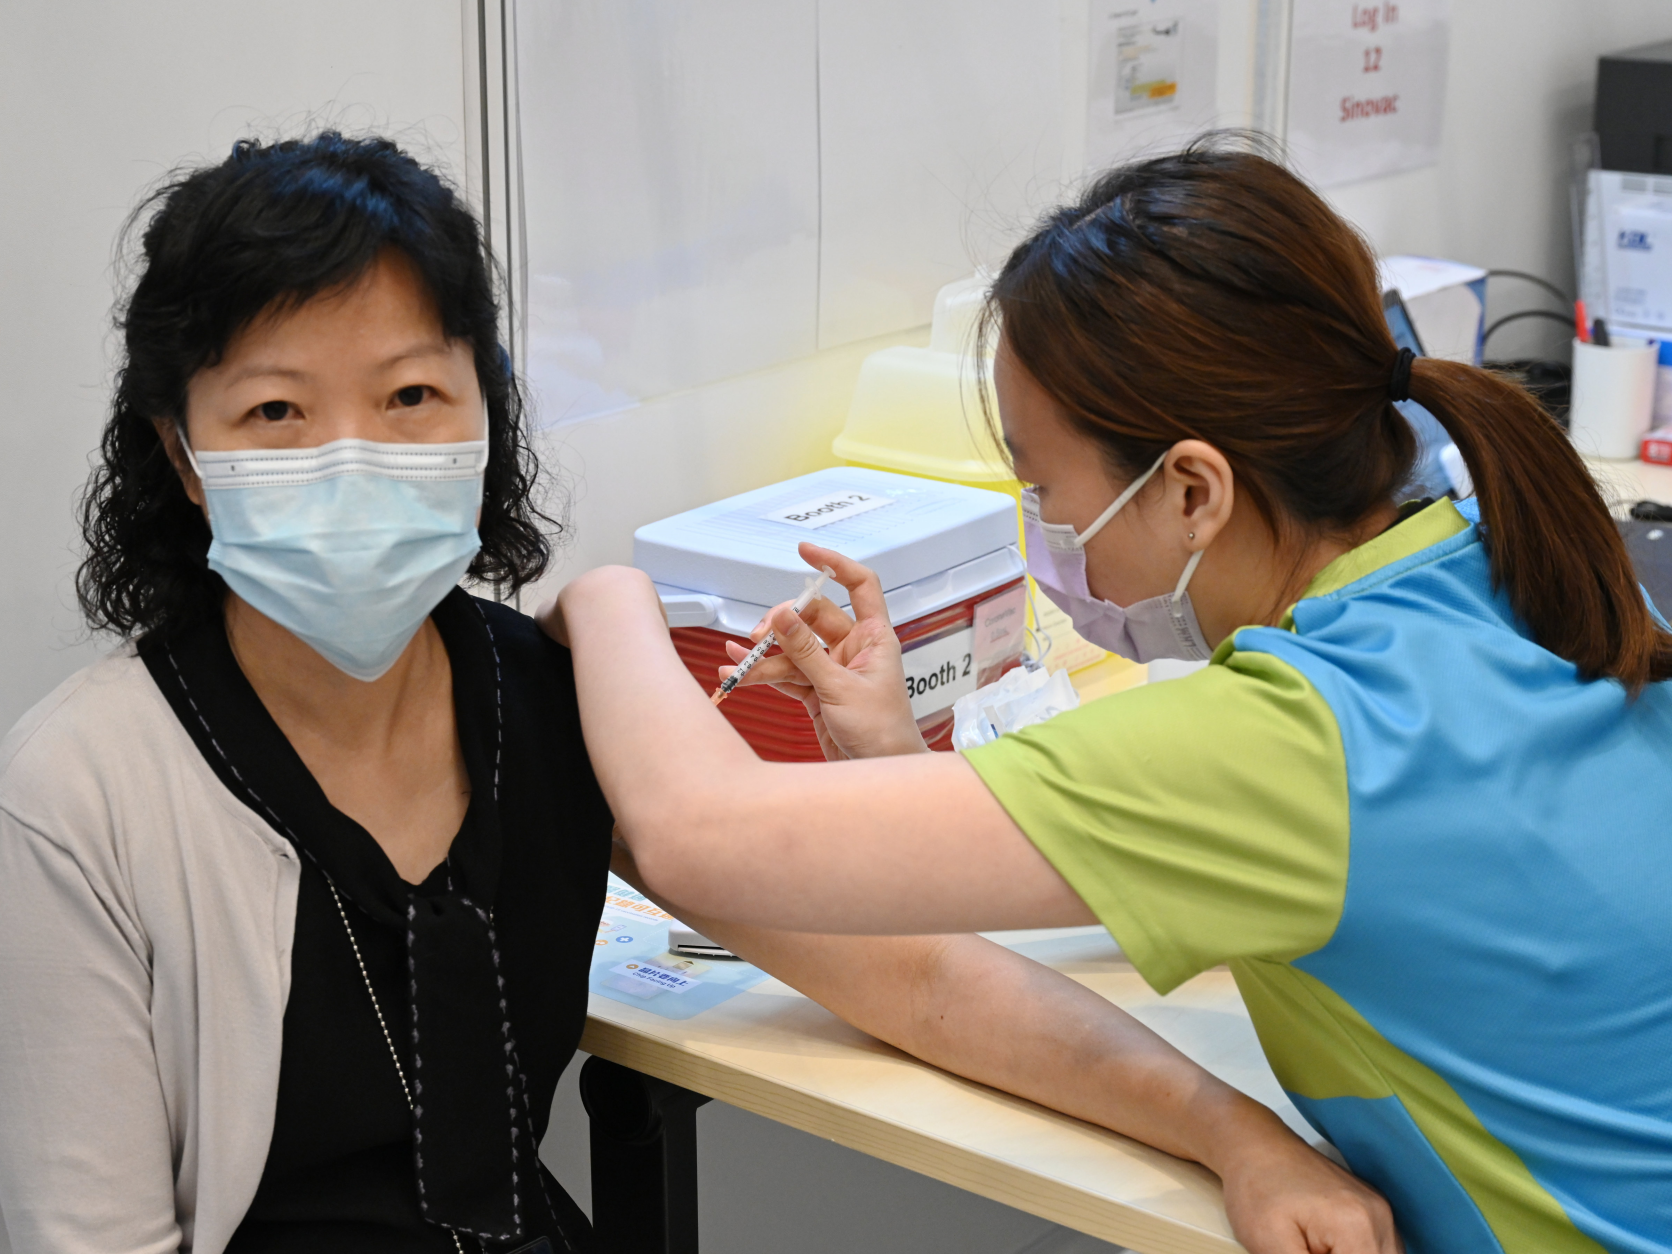 香港37万外佣须强检，专家称最大程度限制病毒传播